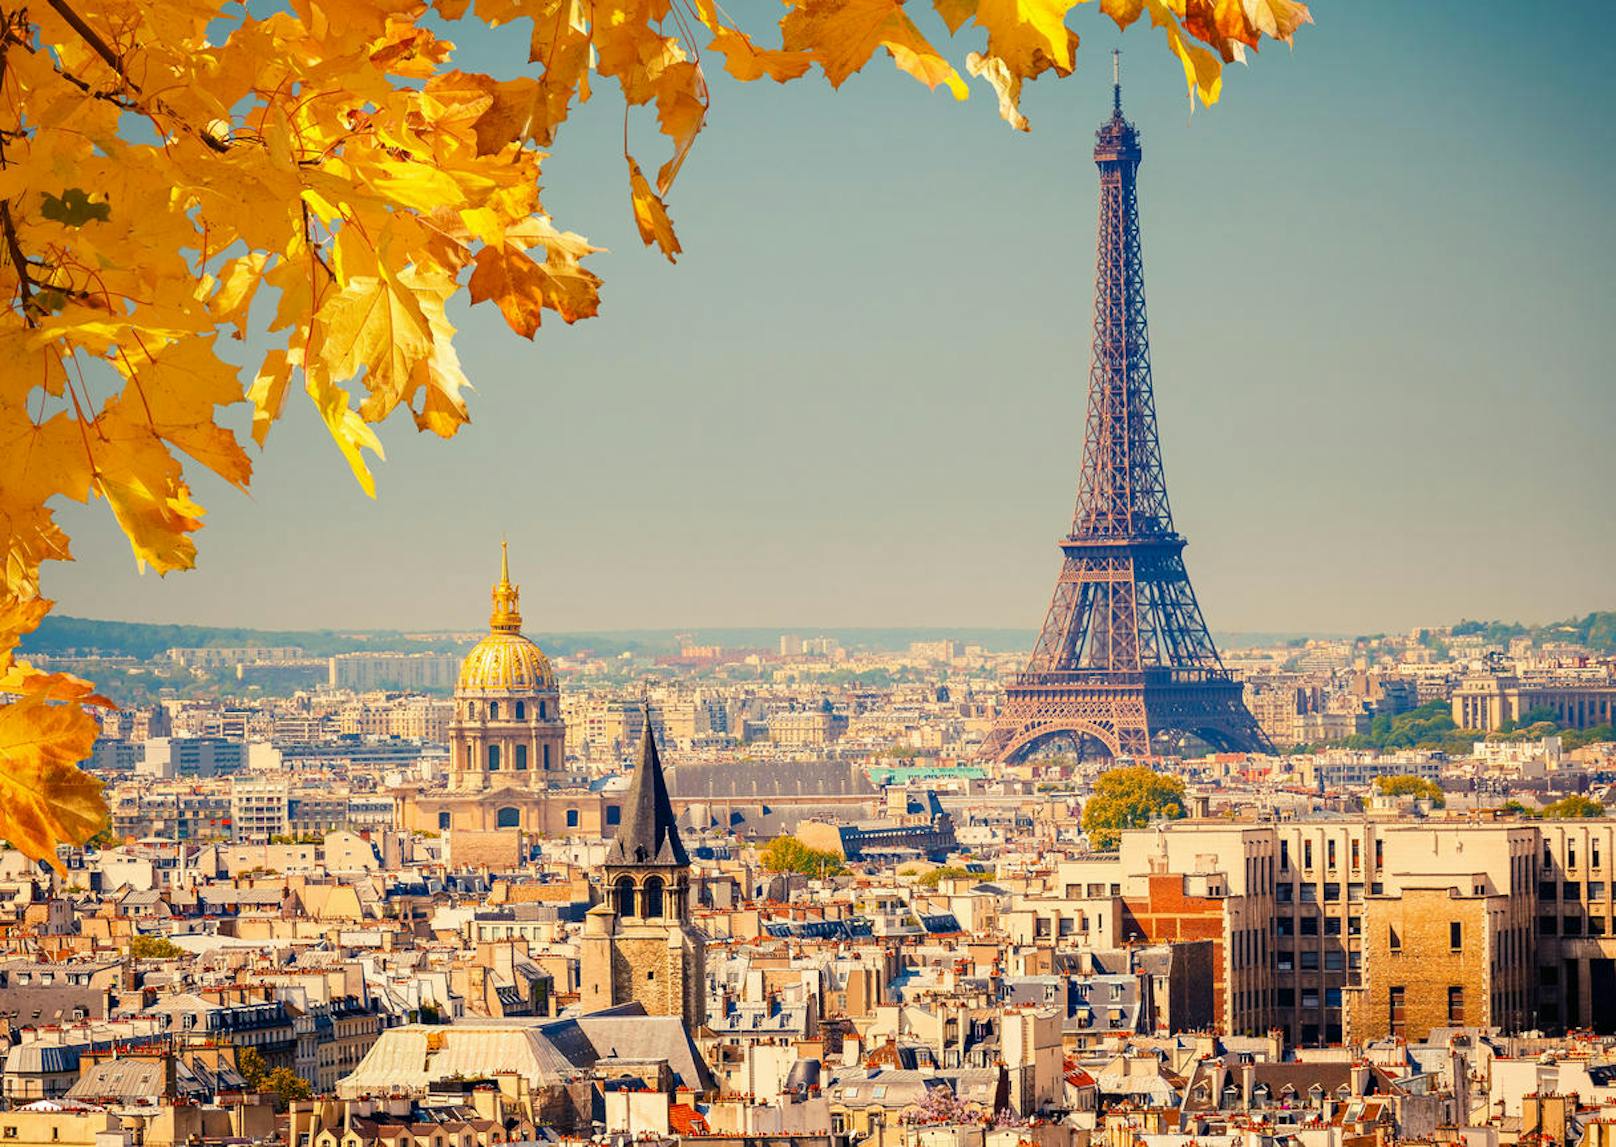 <b>Das (un)verfängliche Souvenir: Paris</b>

Garantiert kein Paris-Urlauber möchte sich die eindrucksvollen Wahrzeichen der Stadt der Liebe entgehen lassen. Ganz gleich ob Montmartre, das wunderschöne Künstlerviertel im Herzen von Paris, Eiffelturm, Notre Dame oder Sacré Coeur - Paris hat einiges zu bieten. Dessen sind sich jedoch auch zahlreiche Gauner bewusst. Junge Souvenir-Verkäufer postieren sich gezielt vor den beliebten Touristenattraktionen und versuchen die Urlauber buchstäblich um den Finger zu wickeln. Erst verwickeln die Händler unwissende Urlauber in ein kurzes Gespräch, verknoten in Windeseile ein geflochtenes Stoffarmband um das Handgelenk der verdutzten Touristen. Das Stoffarmband wird dabei so fest zugeknotet, dass es sich nicht mehr abnehmen lässt. Im nächsten Schritt verlangen die verlangen die Händler dann einen saftigen Preis für das Accessoire.

<b>Tipp:</b> Urlauber sollten die Verkäufer einfach ignorieren und gegebenenfalls die Hände einfach schnell in die eigenen Hosentaschen stecken.